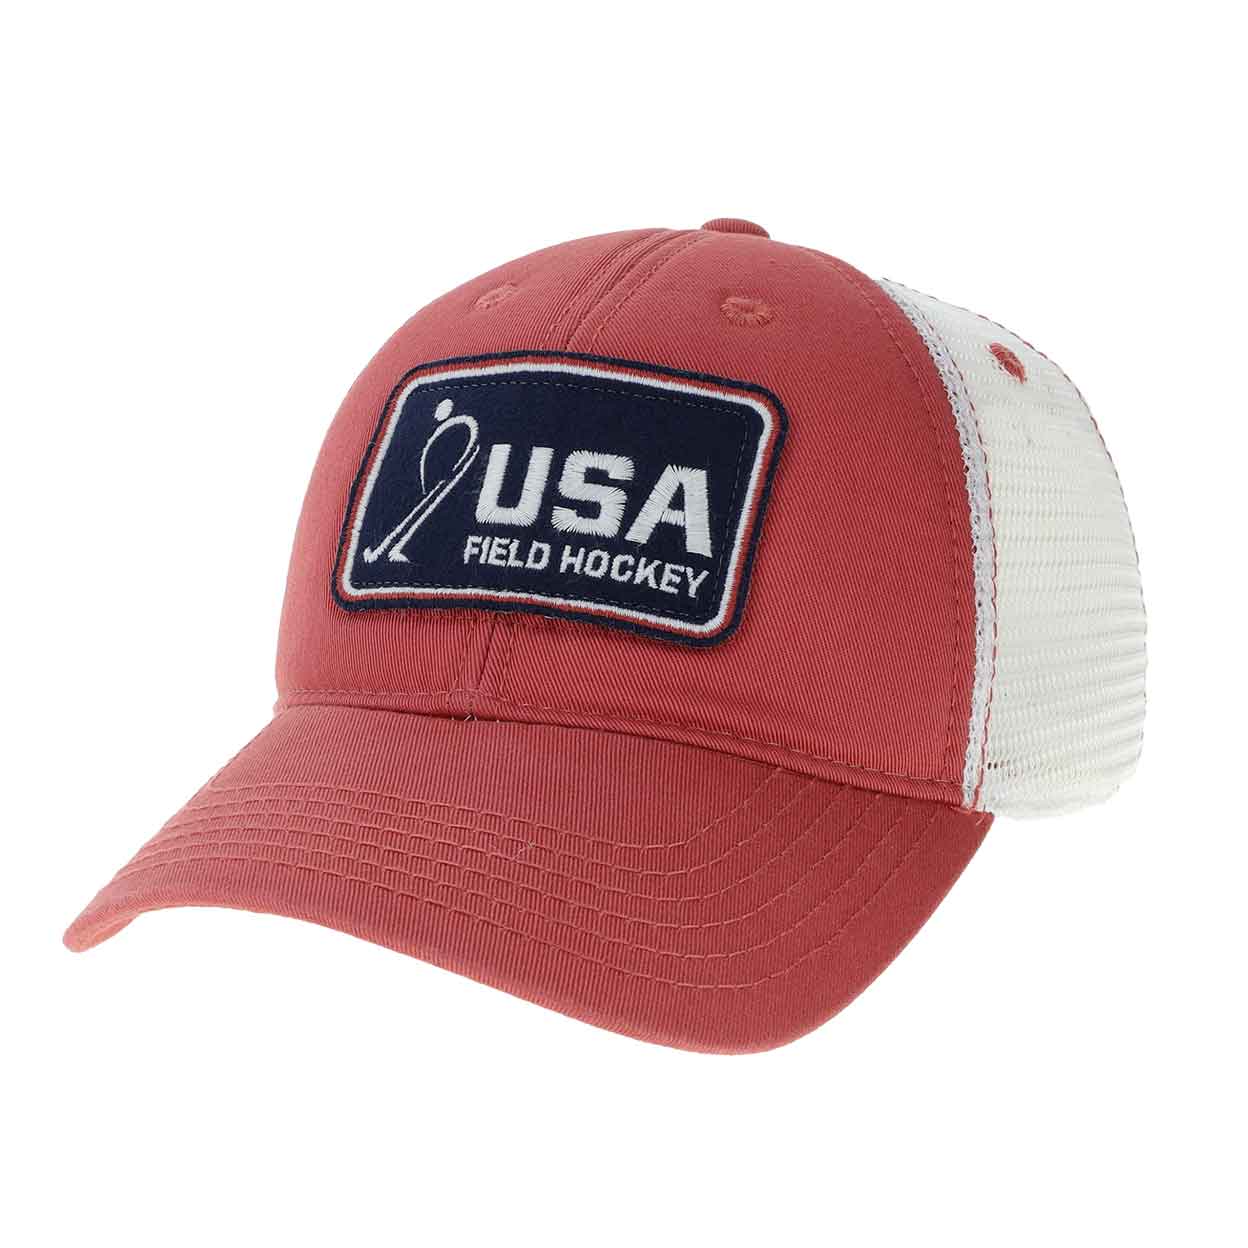 USA Field Hockey Original Trucker Hat